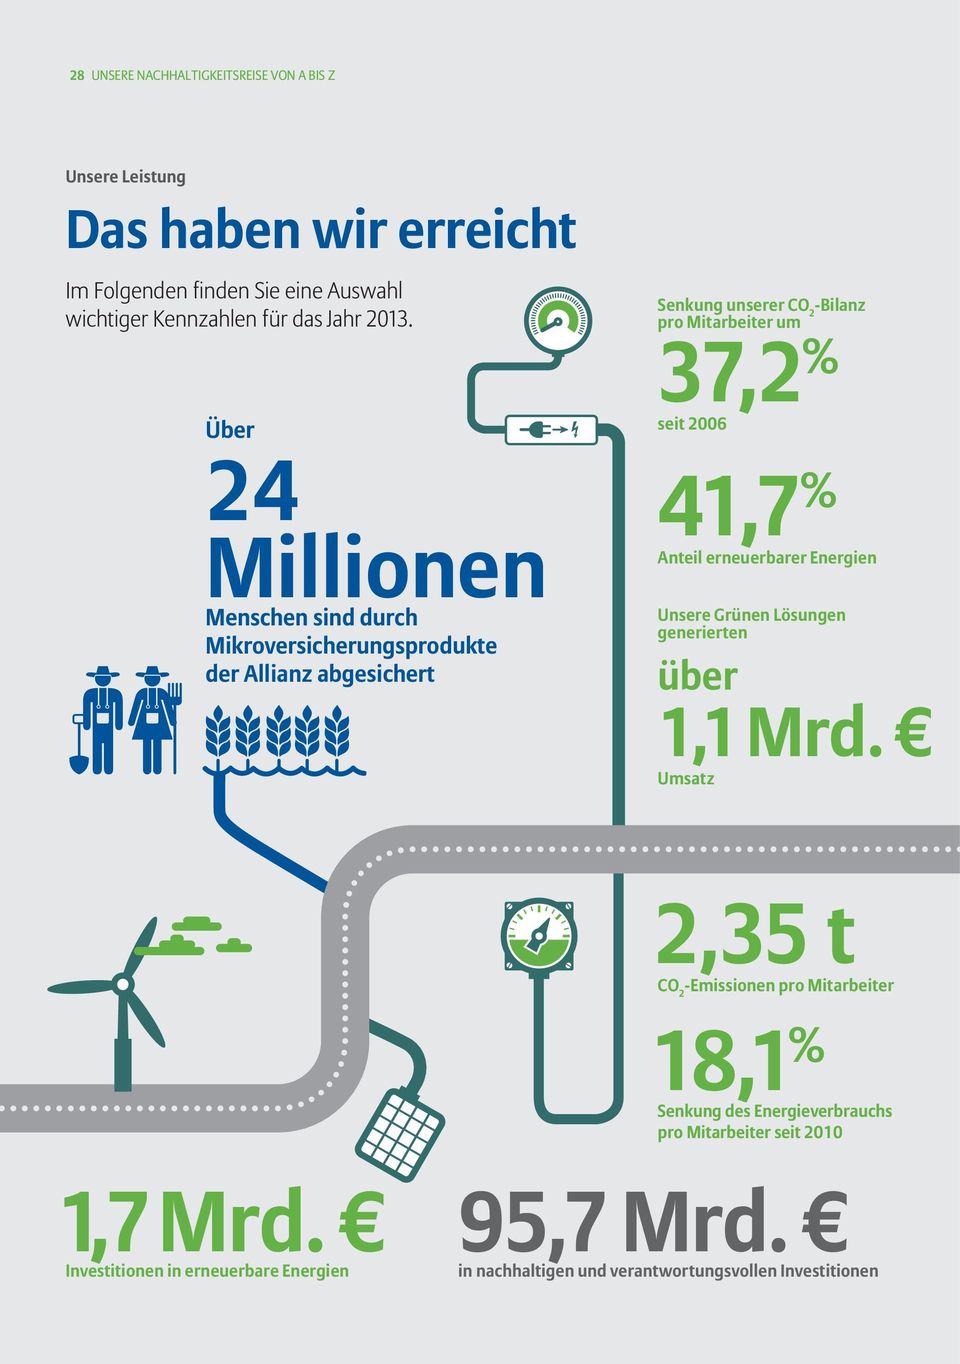 2006 41,7 % Anteil erneuerbarer Energien Unsere Grünen Lösungen generierten über 1,1 Mrd.